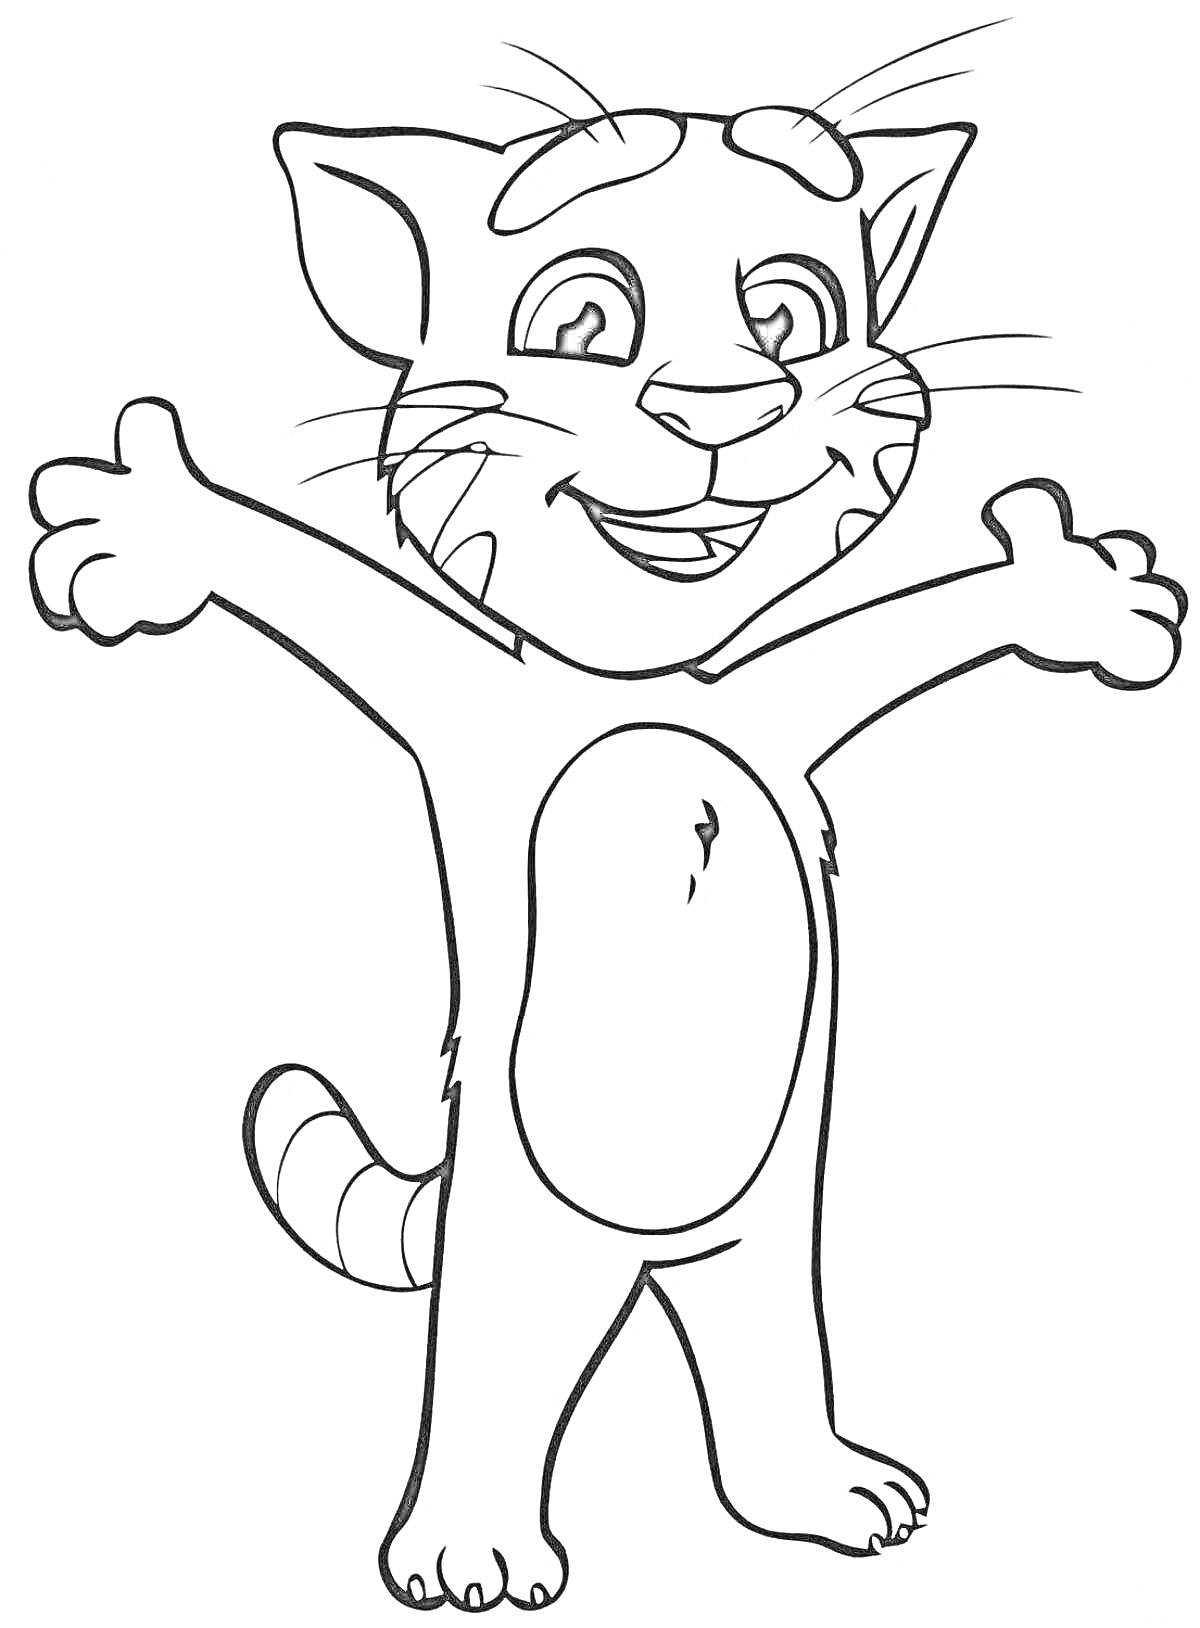 Раскраска Кот с поднятыми лапами и улыбкой